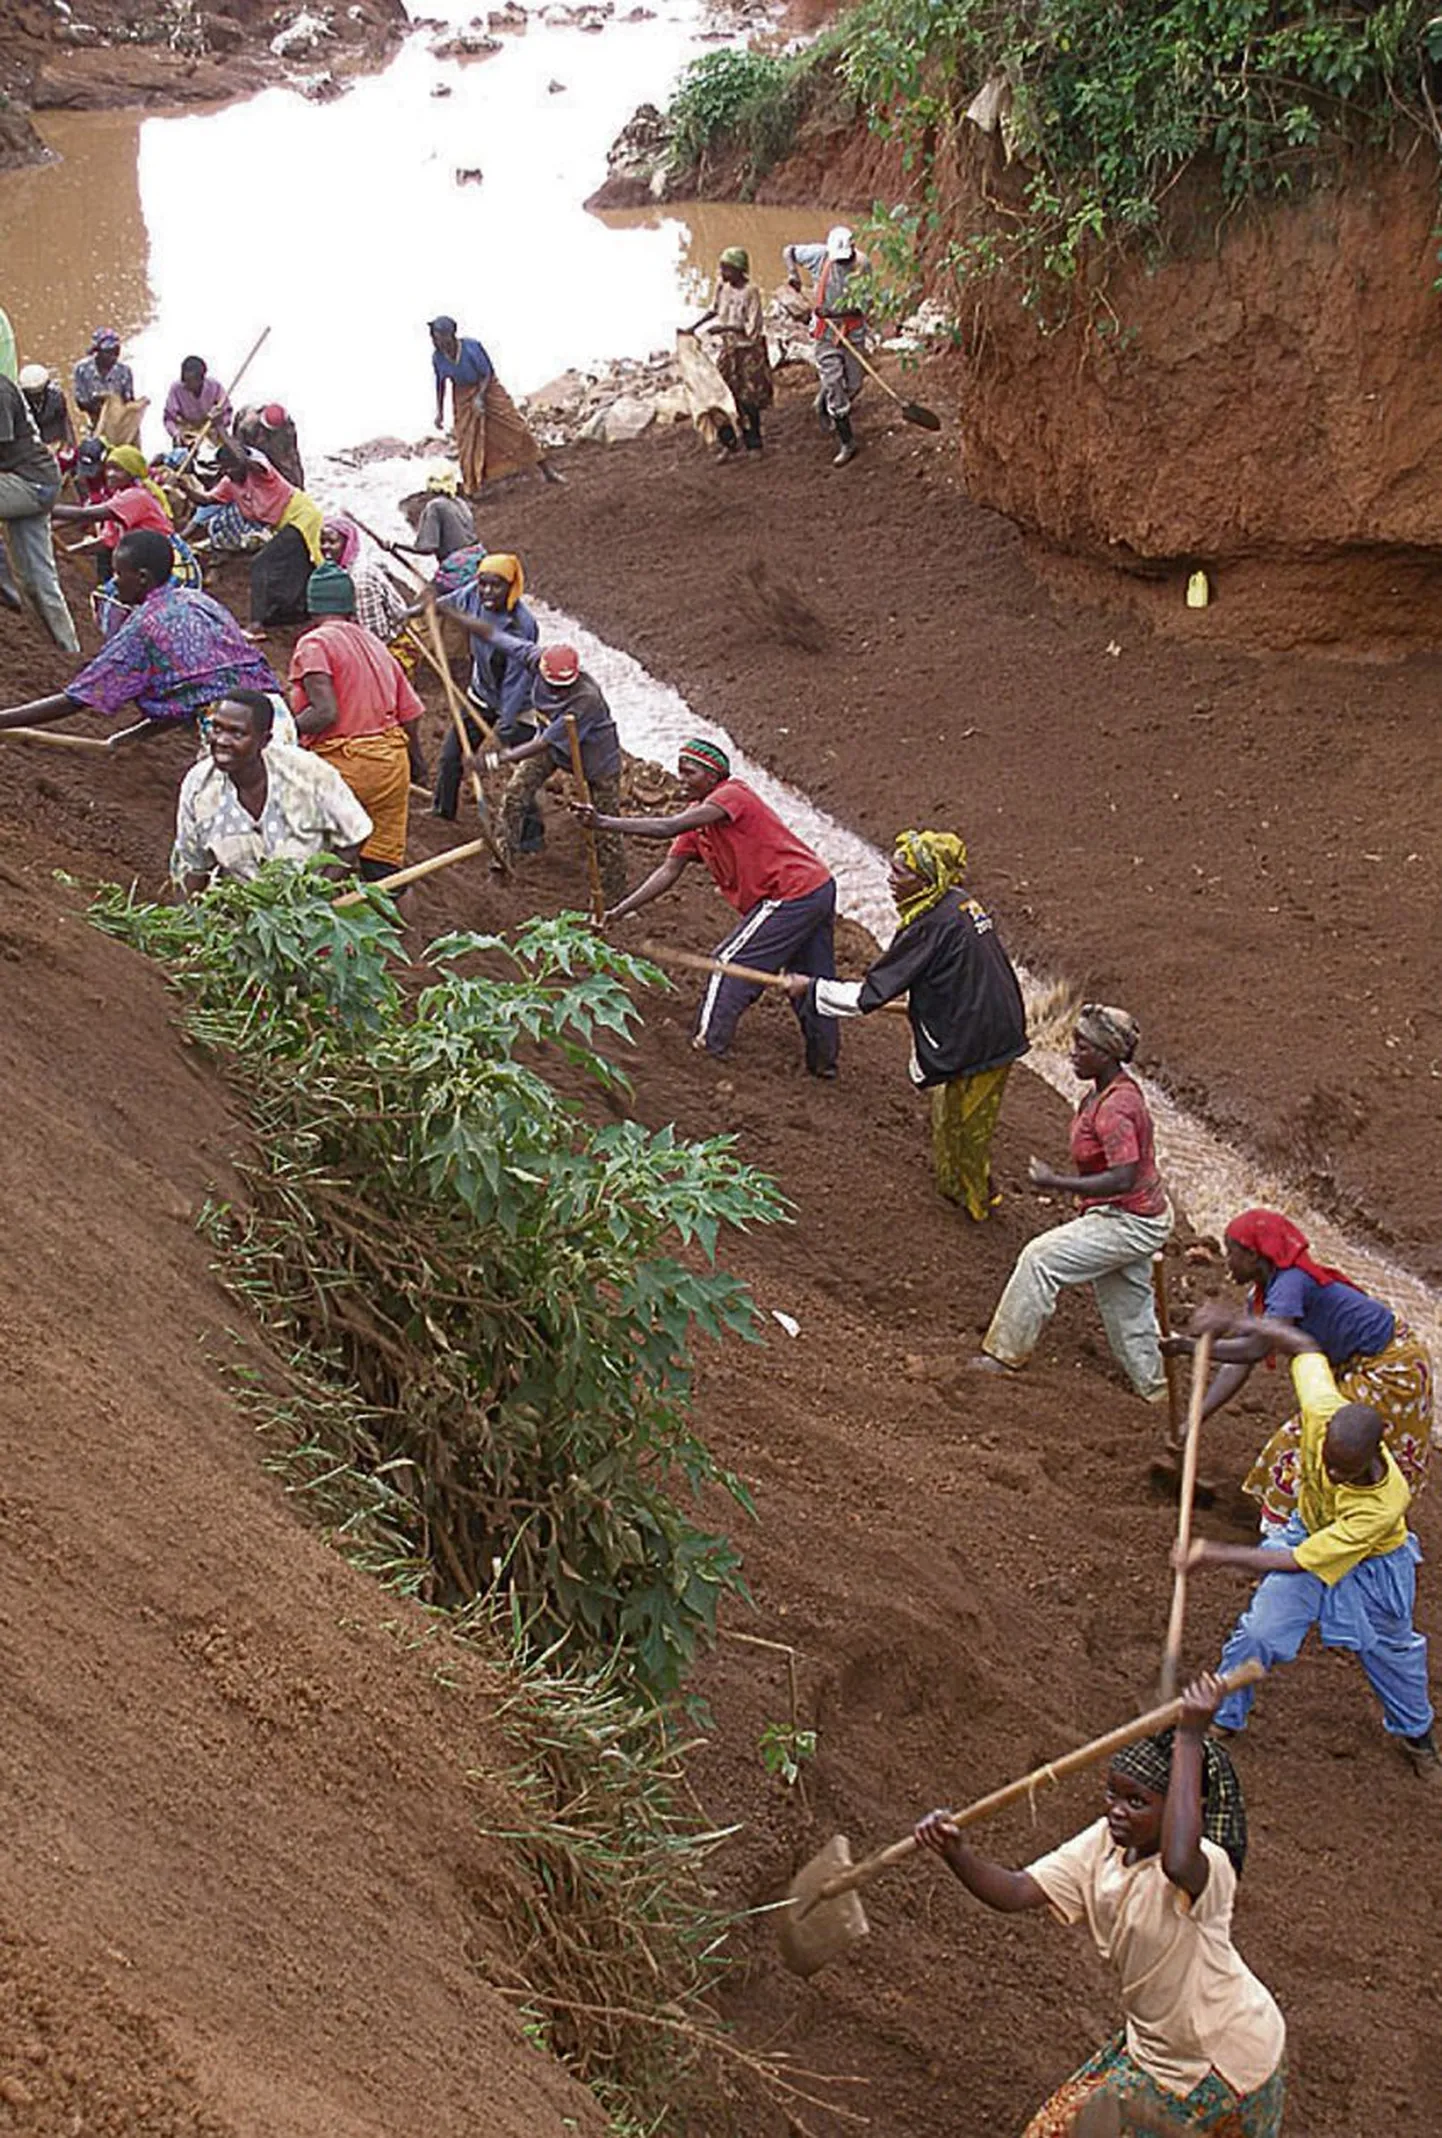 Jõekallaste laugemaks ehitamine annab Kigalis pikaks ajaks tööd tuhandetele inimestele.